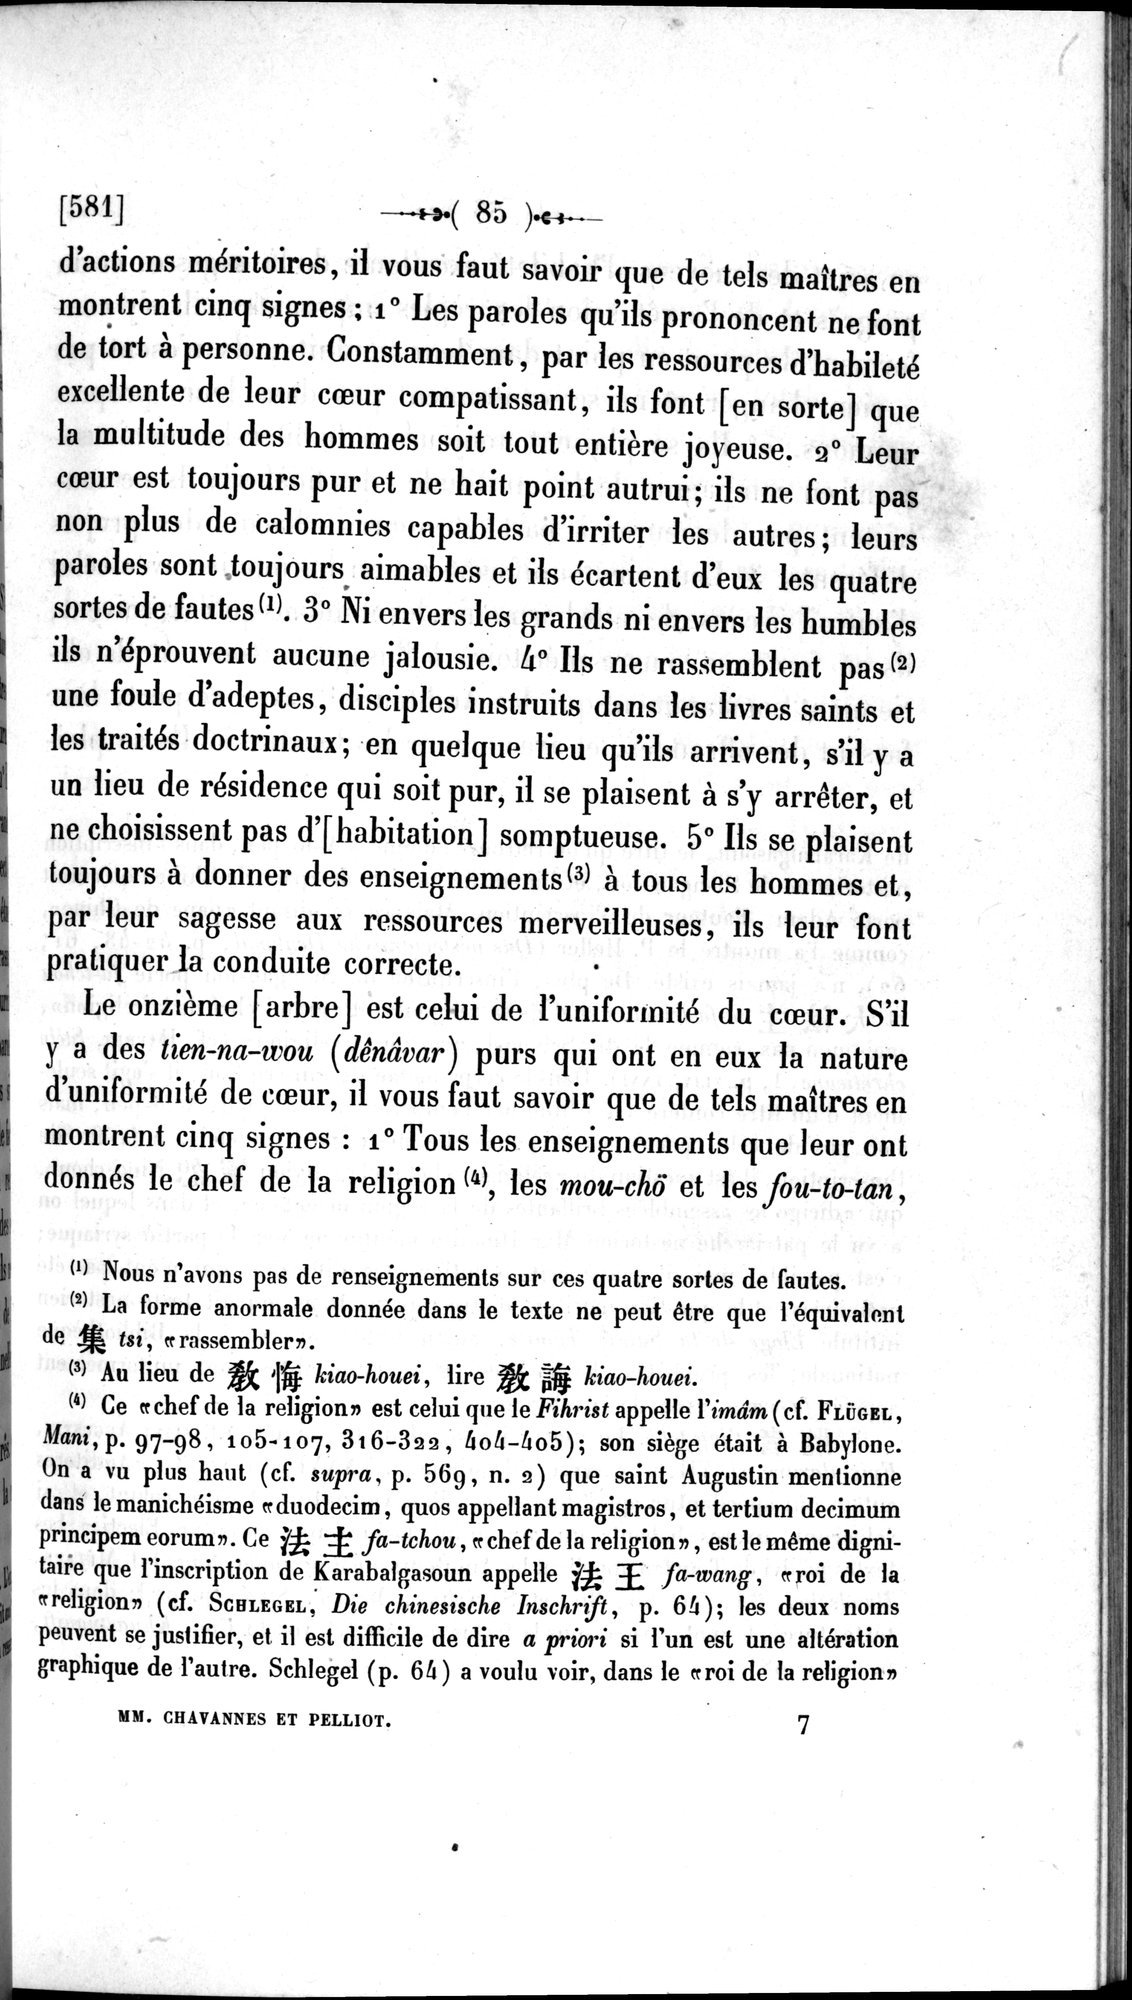 Un traité manichéen retrouvé en Chine : vol.1 / Page 95 (Grayscale High Resolution Image)